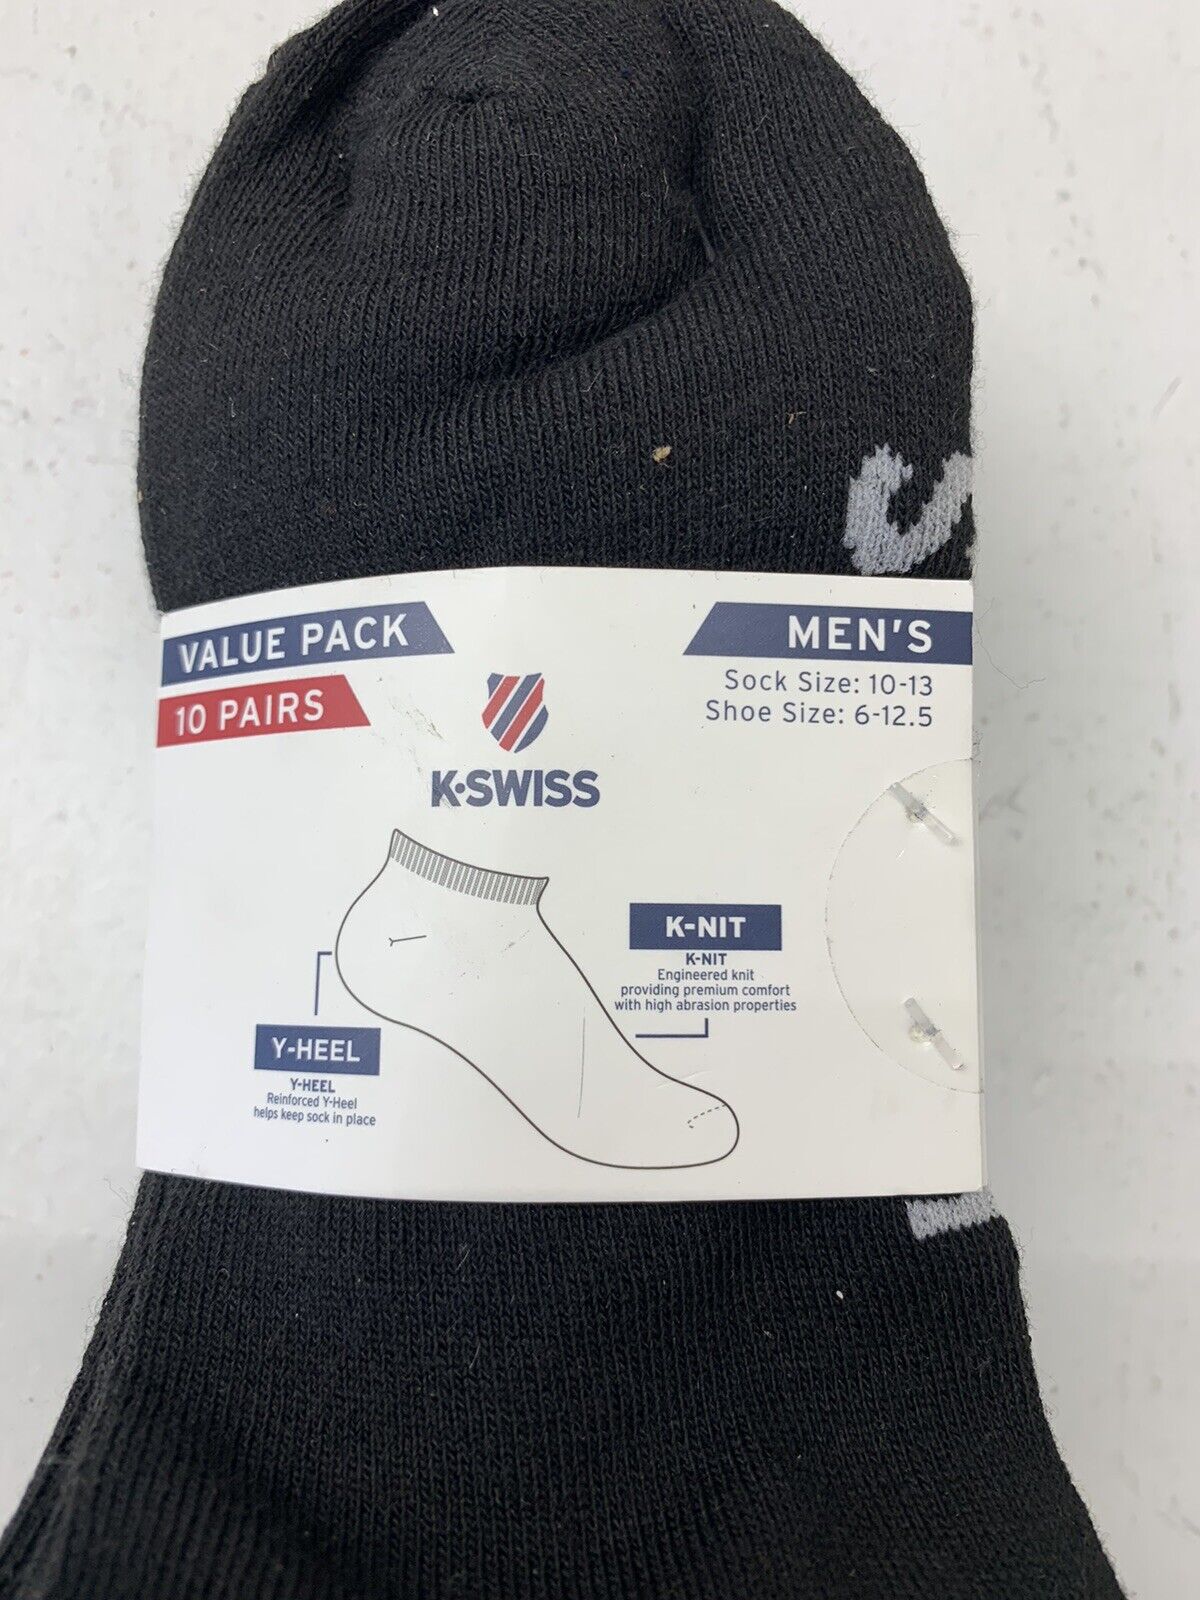 China Afleiding moed K.Swiss - Men's 10 Pair Low Cut Socks - Black - Value Pack, KSwiss - beyond  exchange